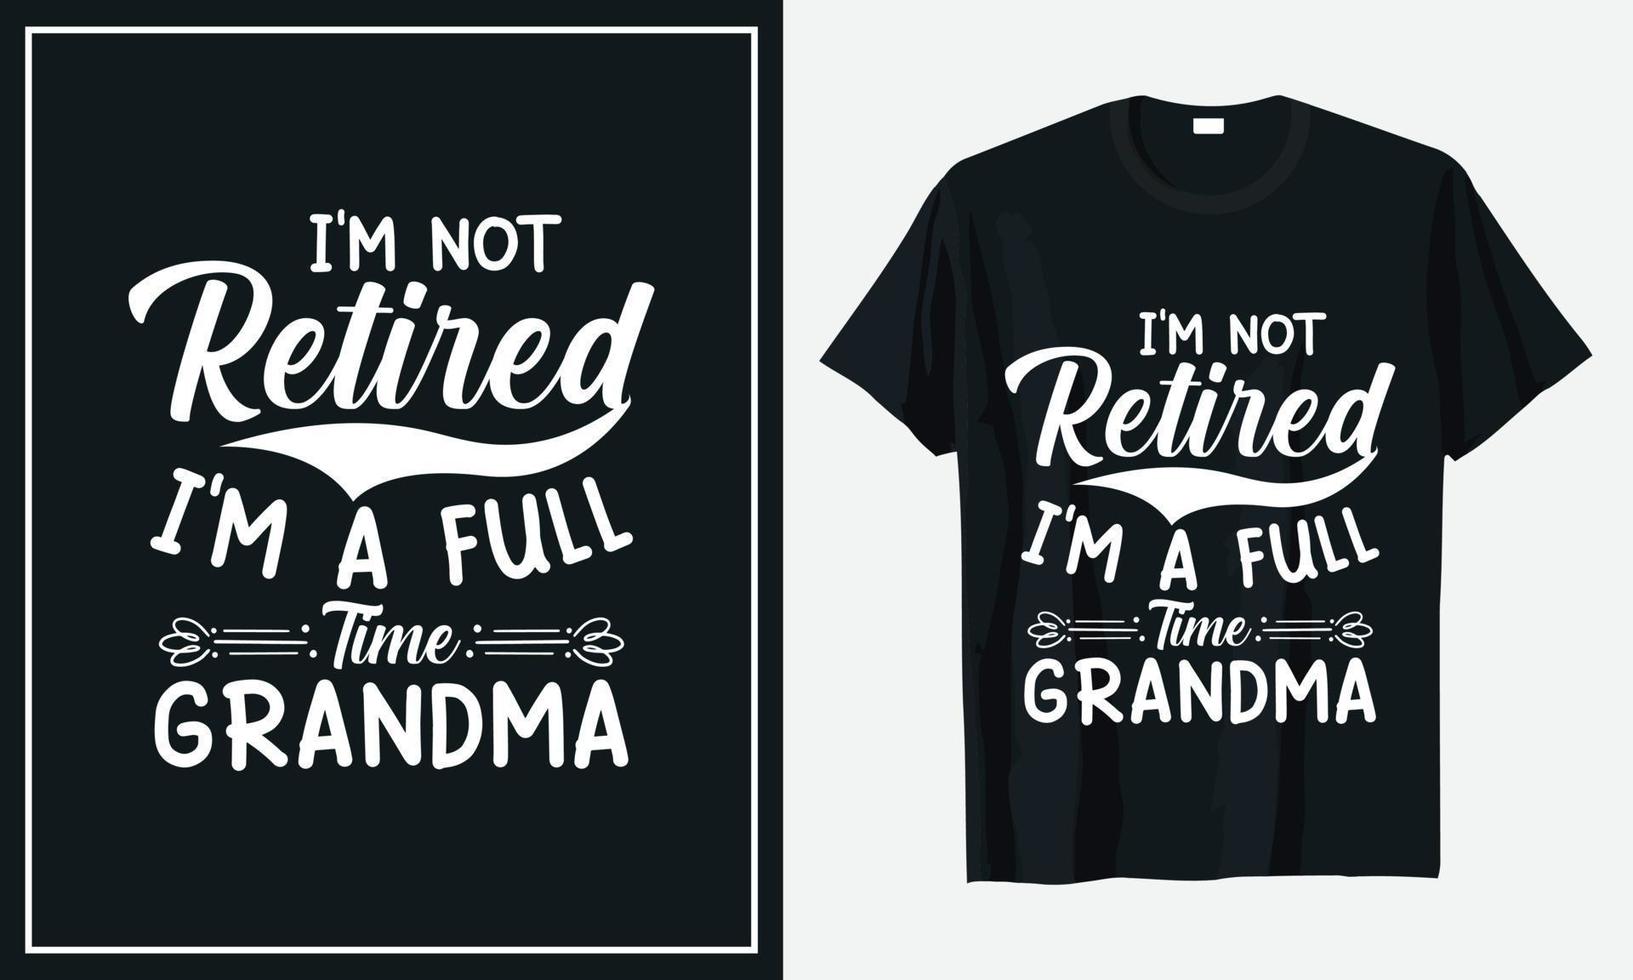 conception de t-shirt fête des grands-parents impression vectorielle premium vecteur